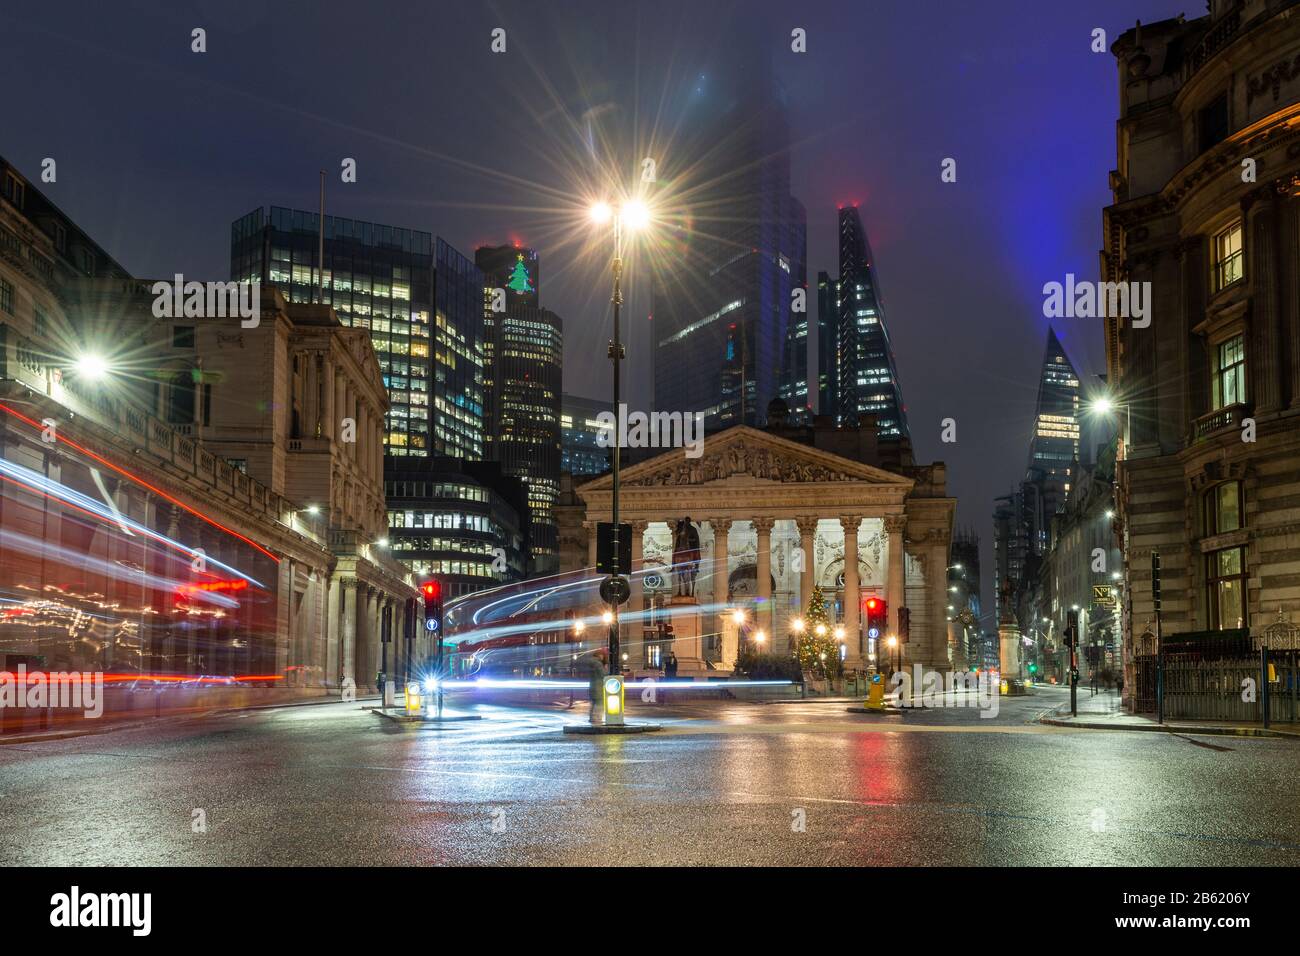 Londra, Inghilterra, Regno Unito - 31 dicembre 2019: Il traffico attraversa lo svincolo notturno della Bank of England, la Royal Exchange e i moderni grattacieli Foto Stock